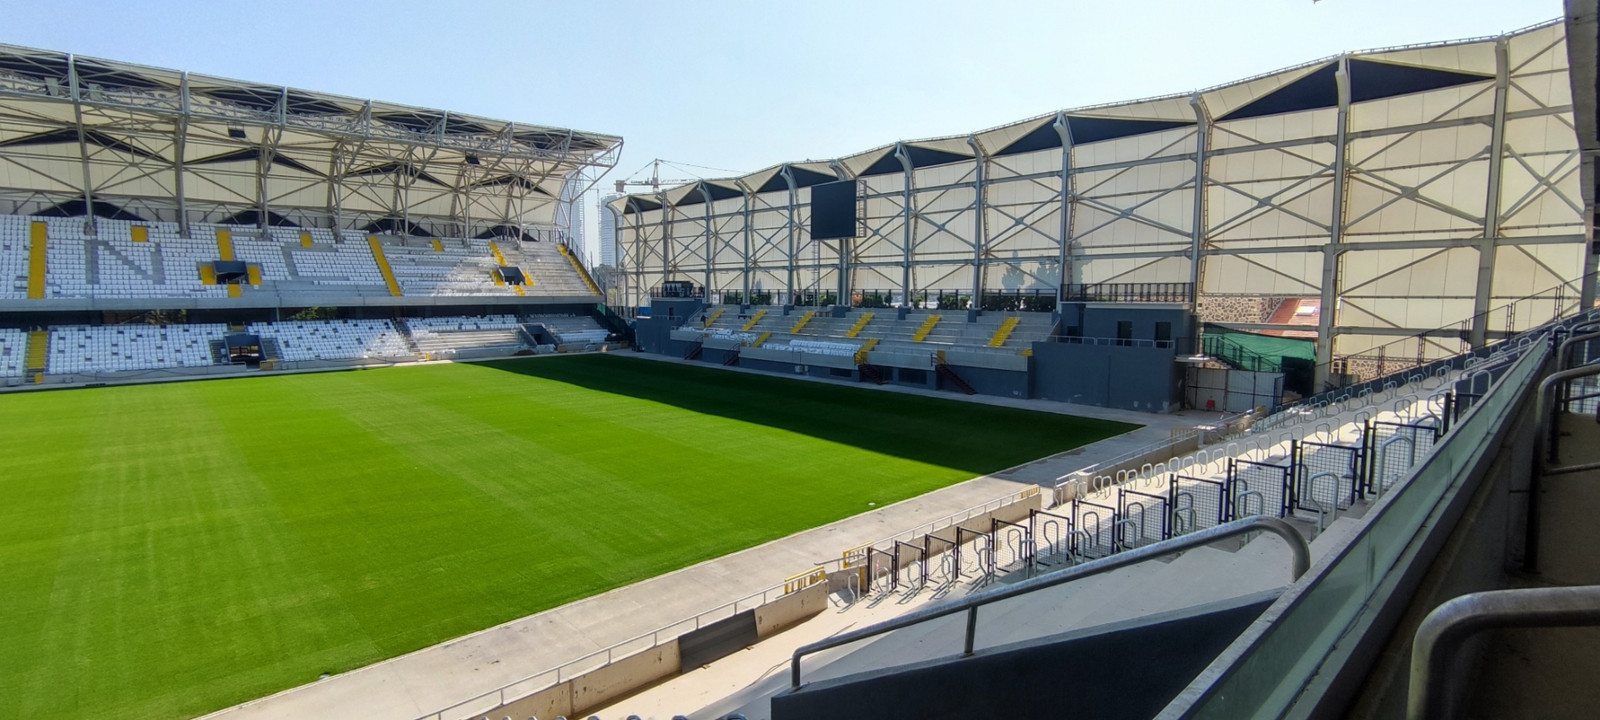 Jeder der 15.000 Sitze des Alsancak Stadions in Izmir sollte mit einer Auflösungsdichte von mindestens 144 Pixel pro Meter erfasst werden. Mit der Dallmeier Lösung waren es fast 40 Prozent mehr. 